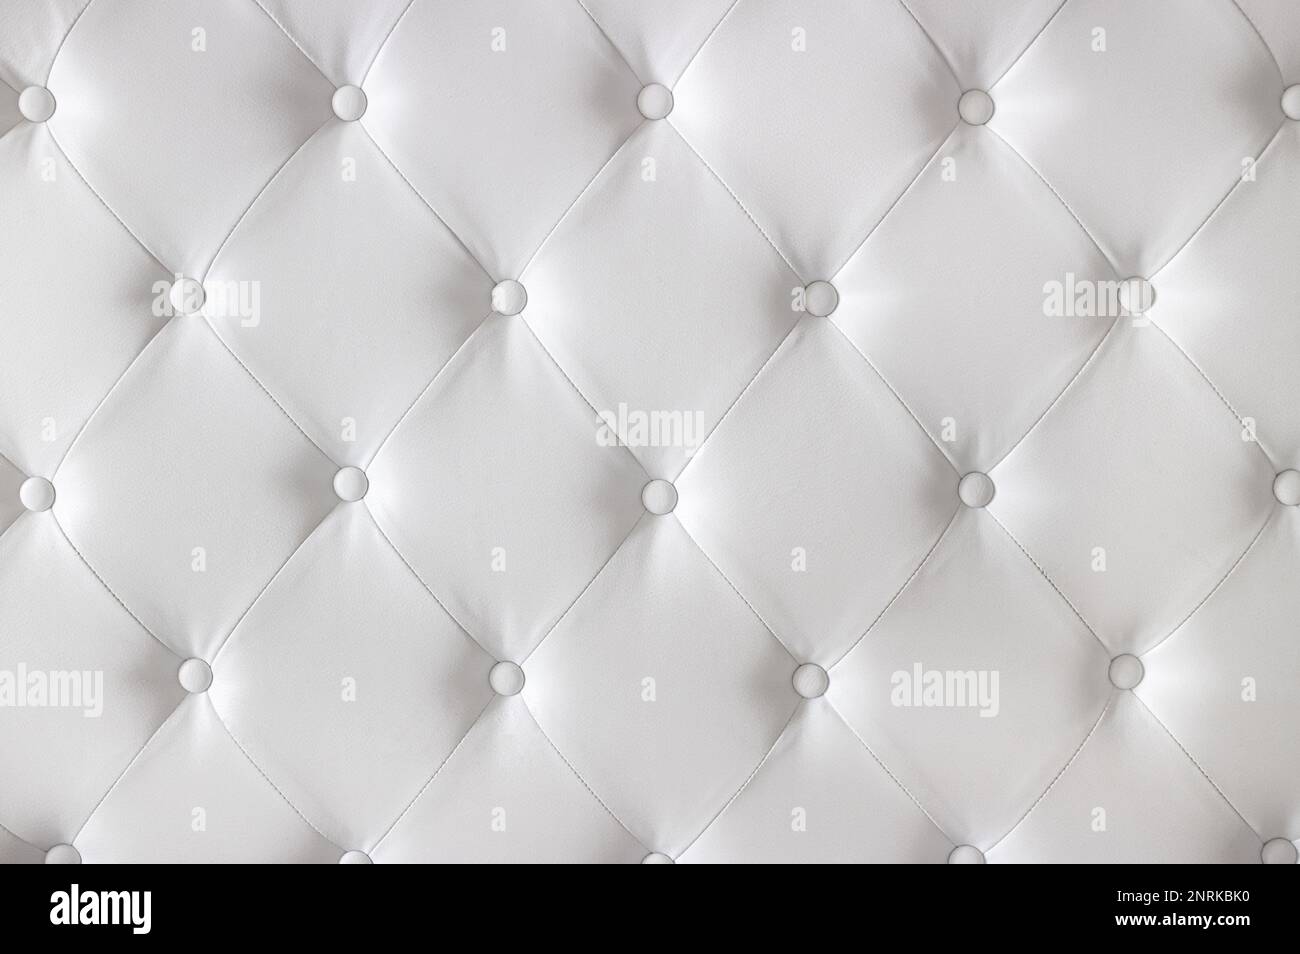 Tapicería de cuero con patrón de diamante lujoso blanco con botones. Concepto de fondo. Cubierta de sofá de muebles. Foto de stock